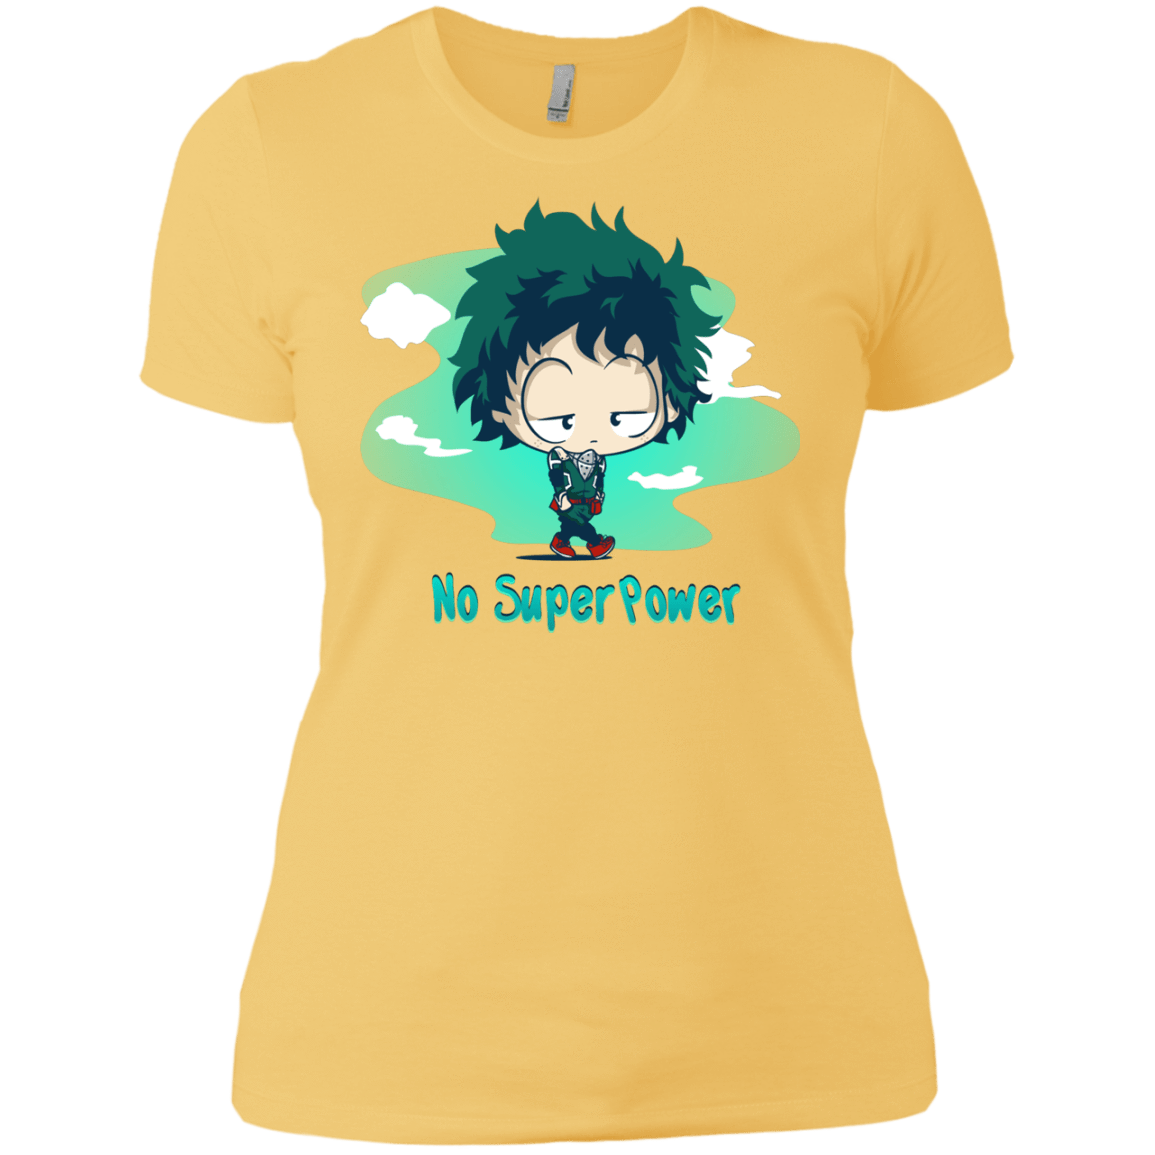 T-Shirts Banana Cream/ / X-Small No Super Power Women's Premium T-Shirt